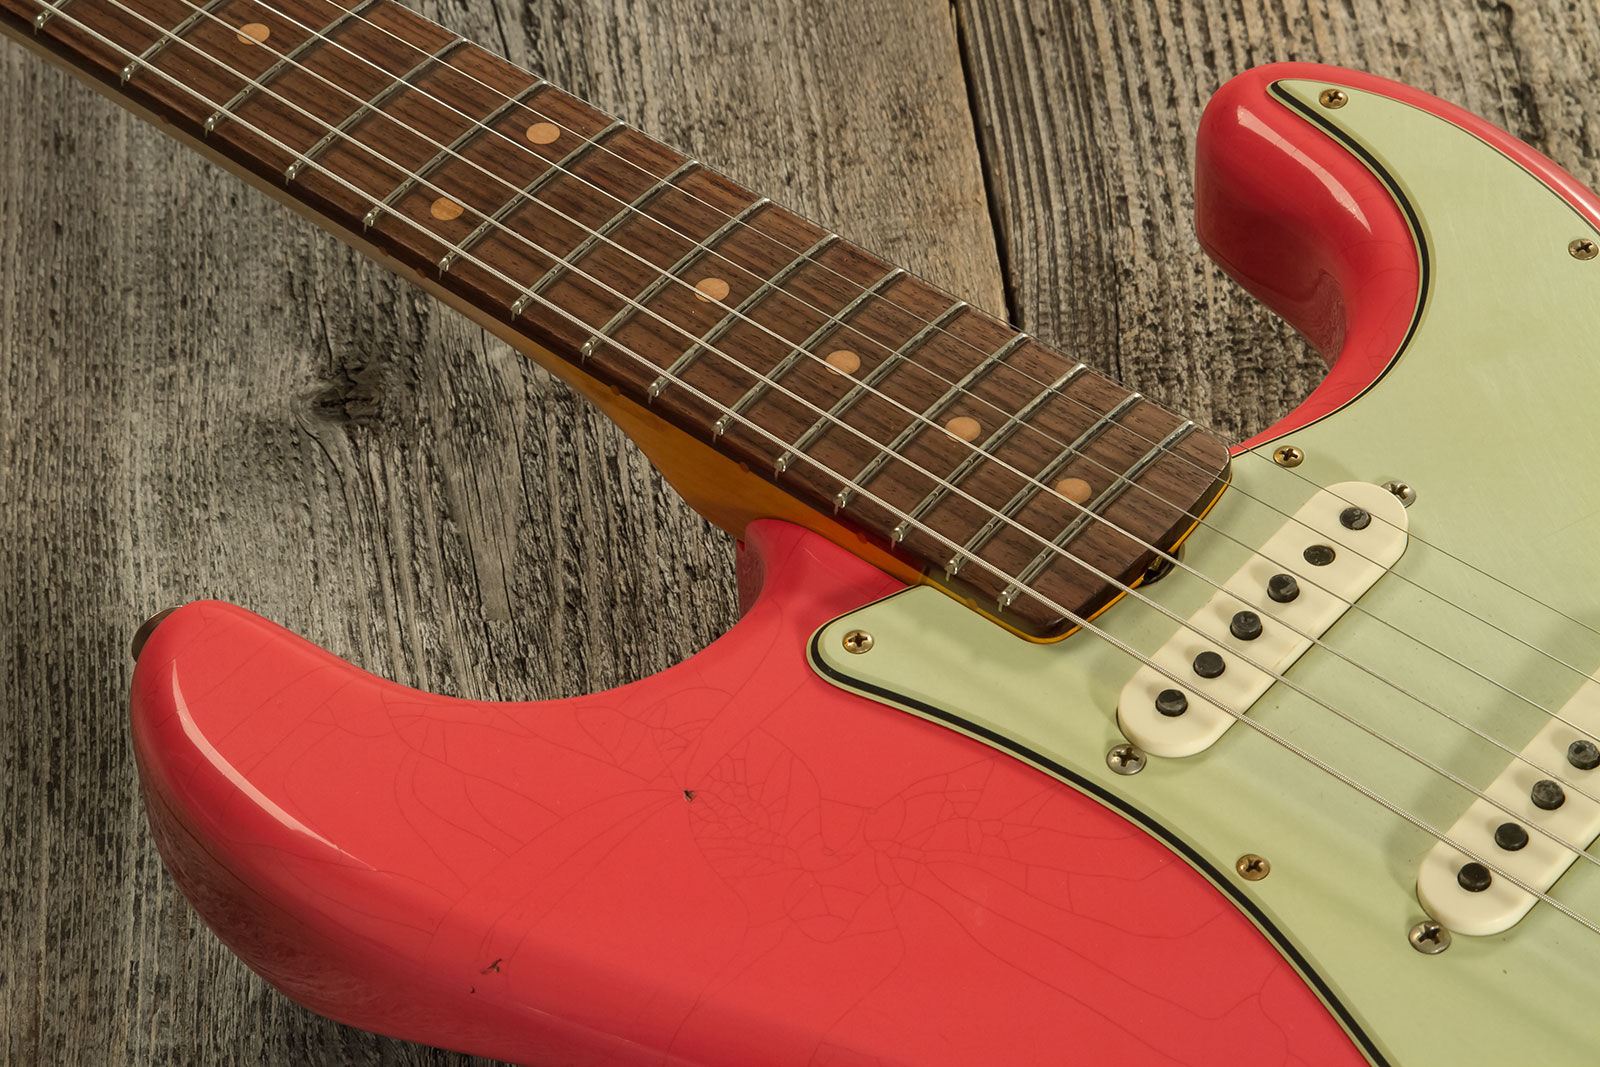 Fender Custom Shop Strat 1959 3s Trem Rw #cz569772 - Journeyman Relic Aged Fiesta Red - Elektrische gitaar in Str-vorm - Variation 3